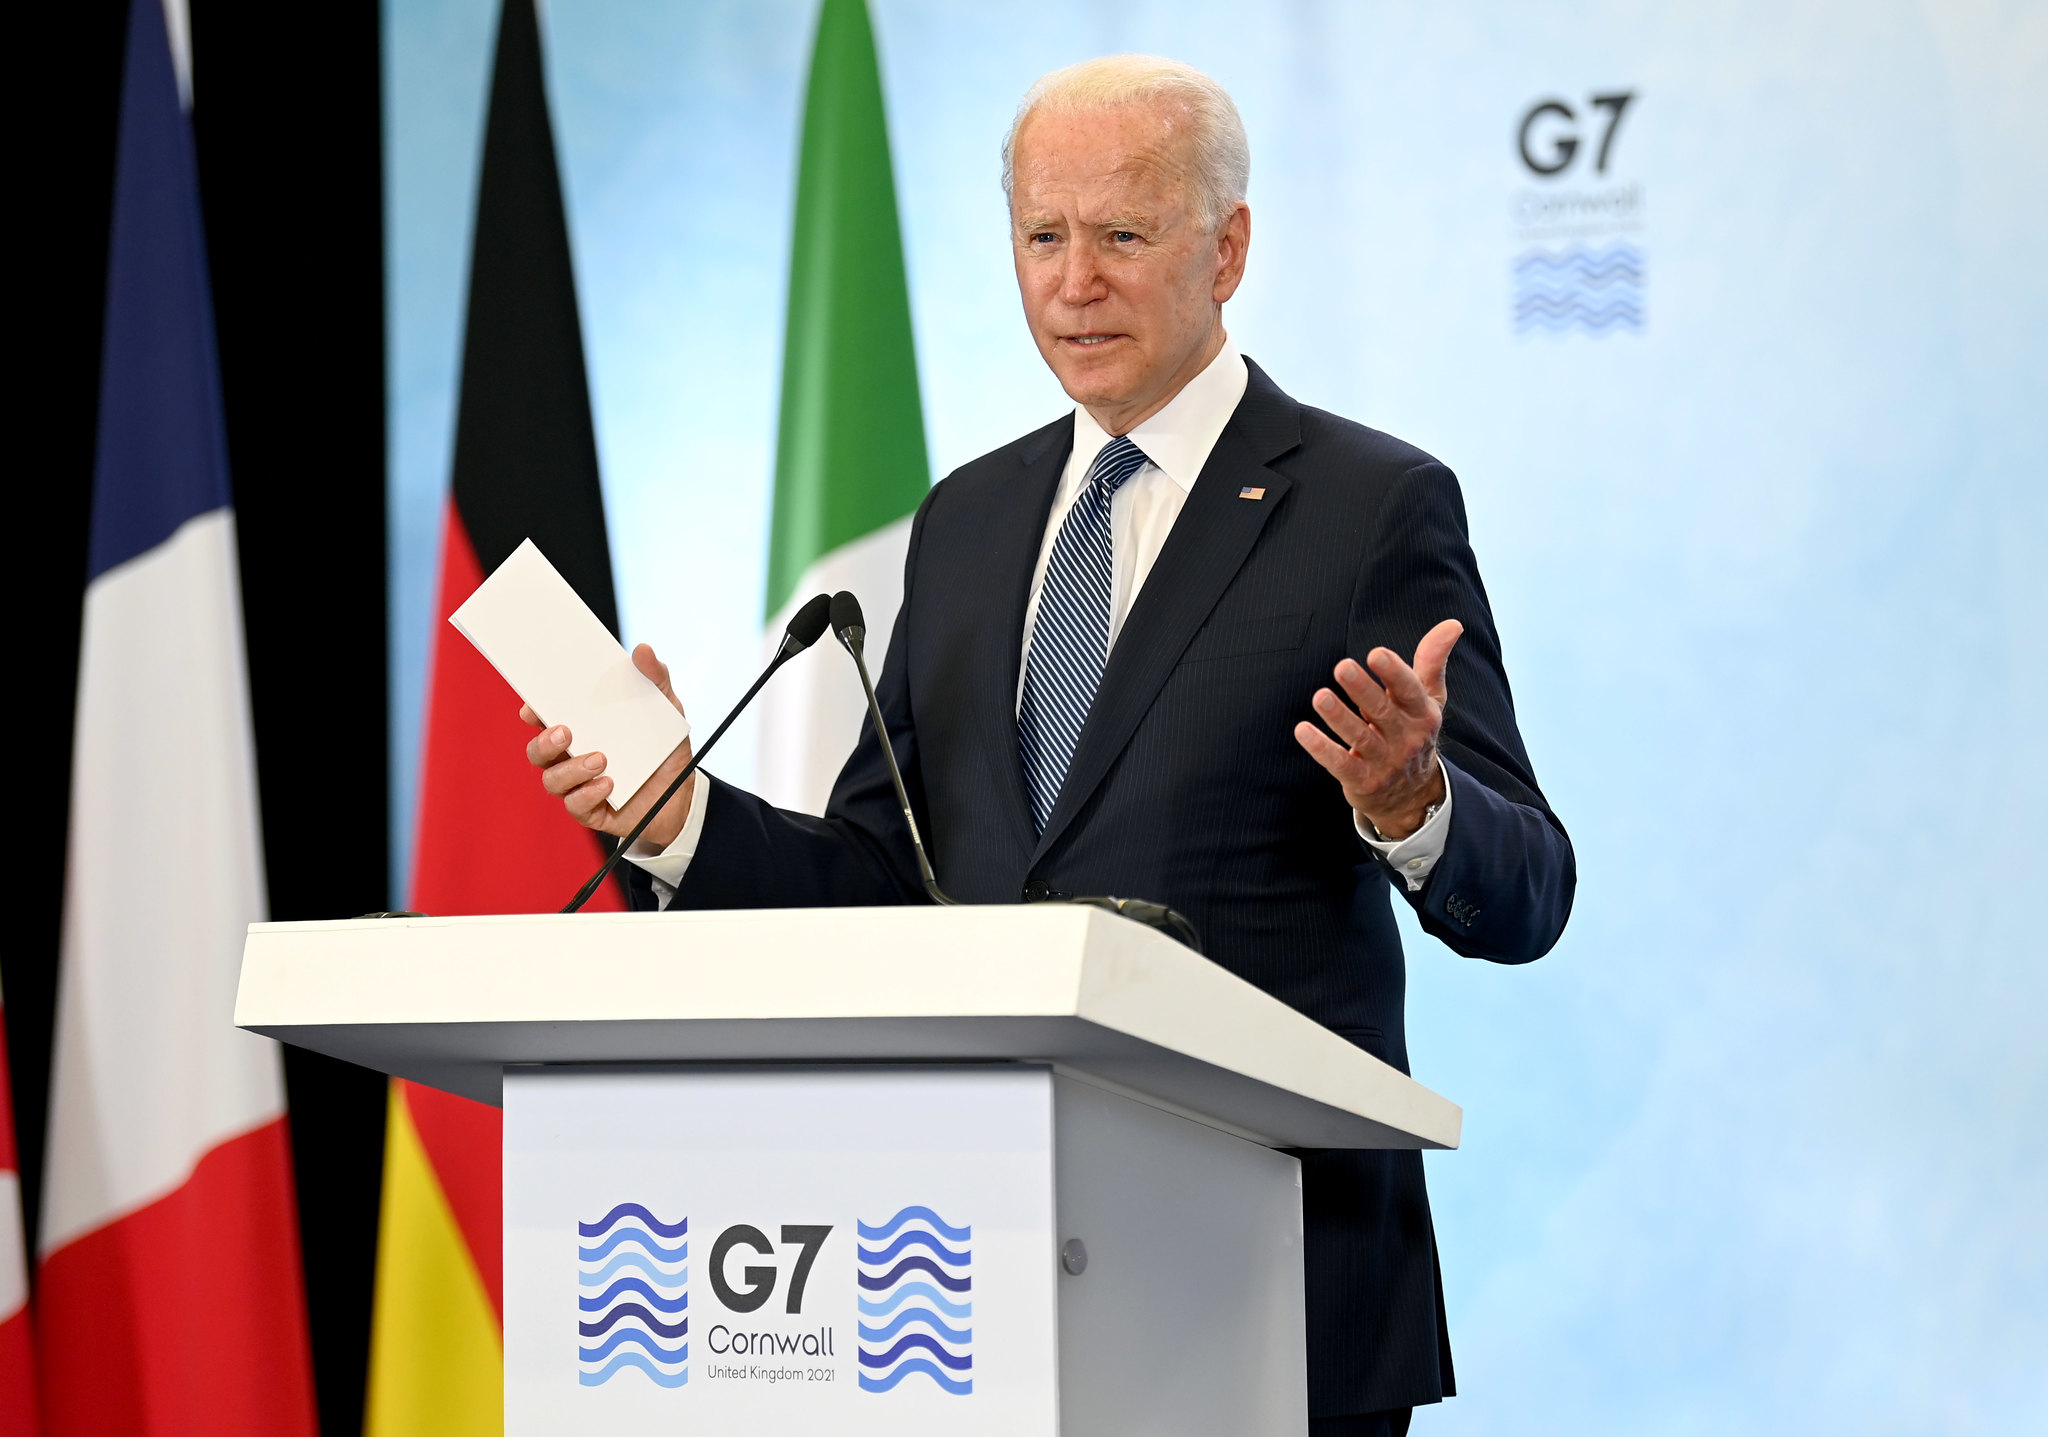 Sulmi i Iranit ndaj Izraelit, Biden do të takohet sot me liderët e G7